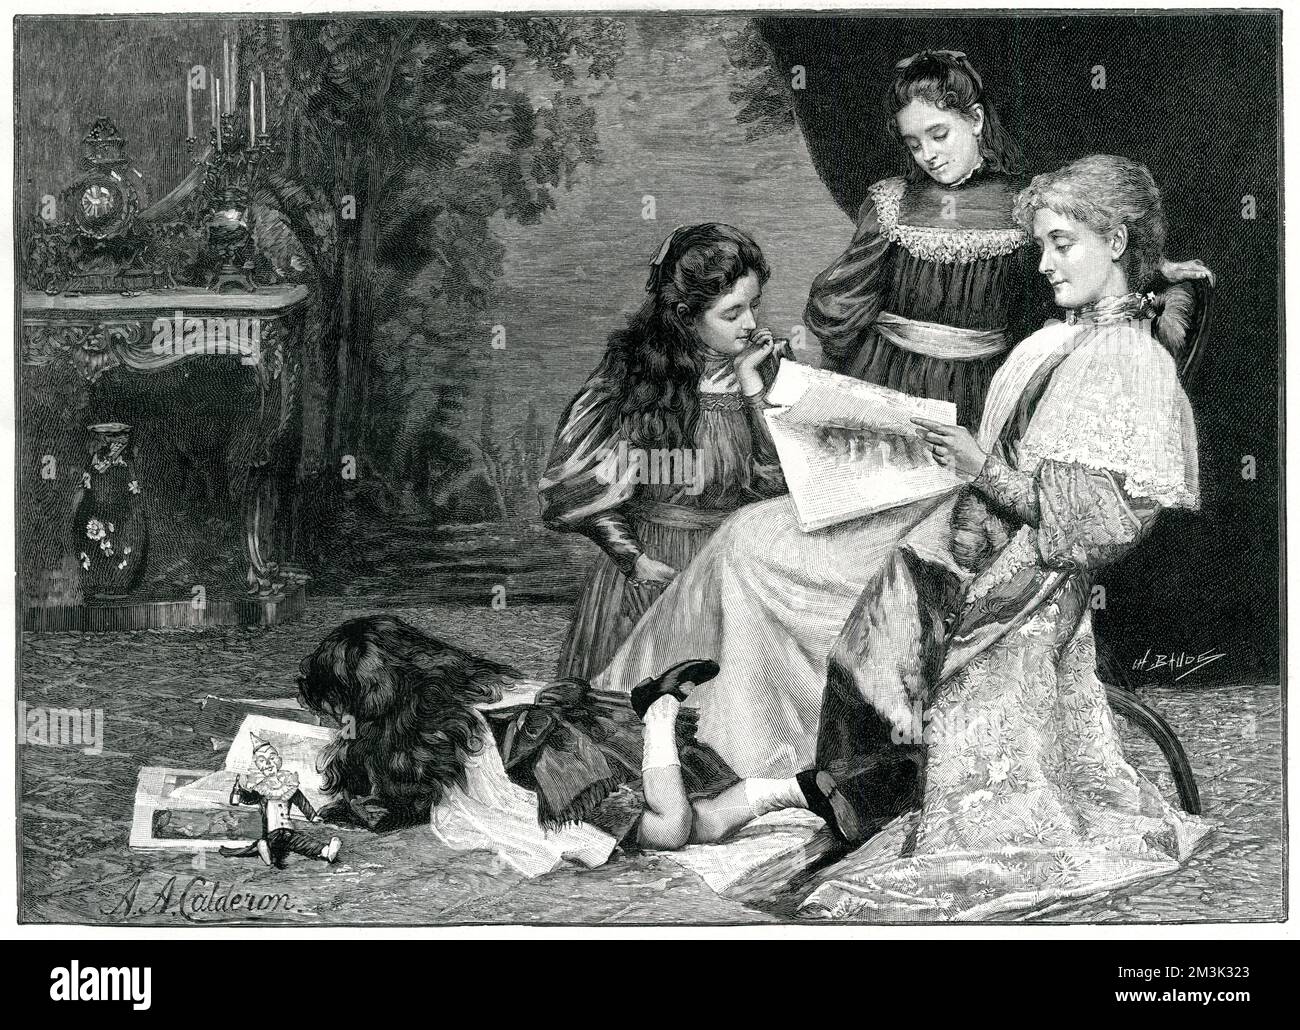 Montrant une mère victorienne et ses trois enfants lisant les articles illustrés dans leur salle de dessin, Grande-Bretagne, c.1897. Date: 1897 Banque D'Images